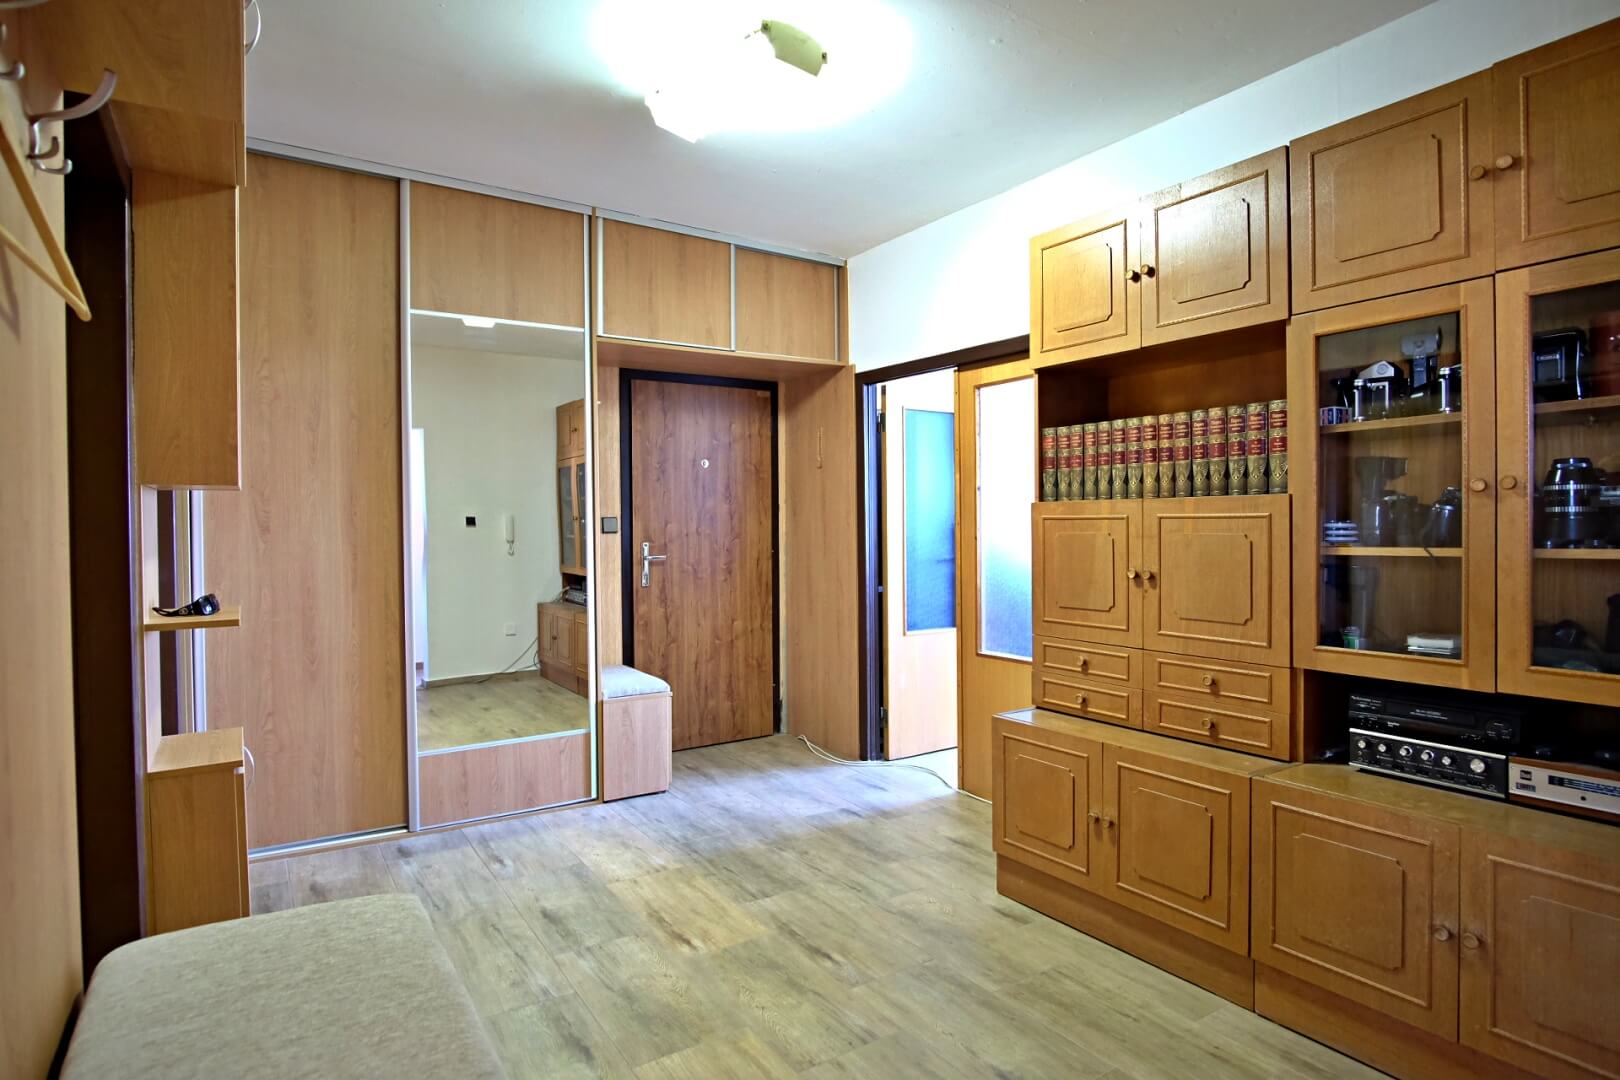 PREDANÉ – Na predaj príjemný 4 izbový byt v lokalite plnej zelene na Vyšehradskej ulici Bratislava- Petržalka.-10